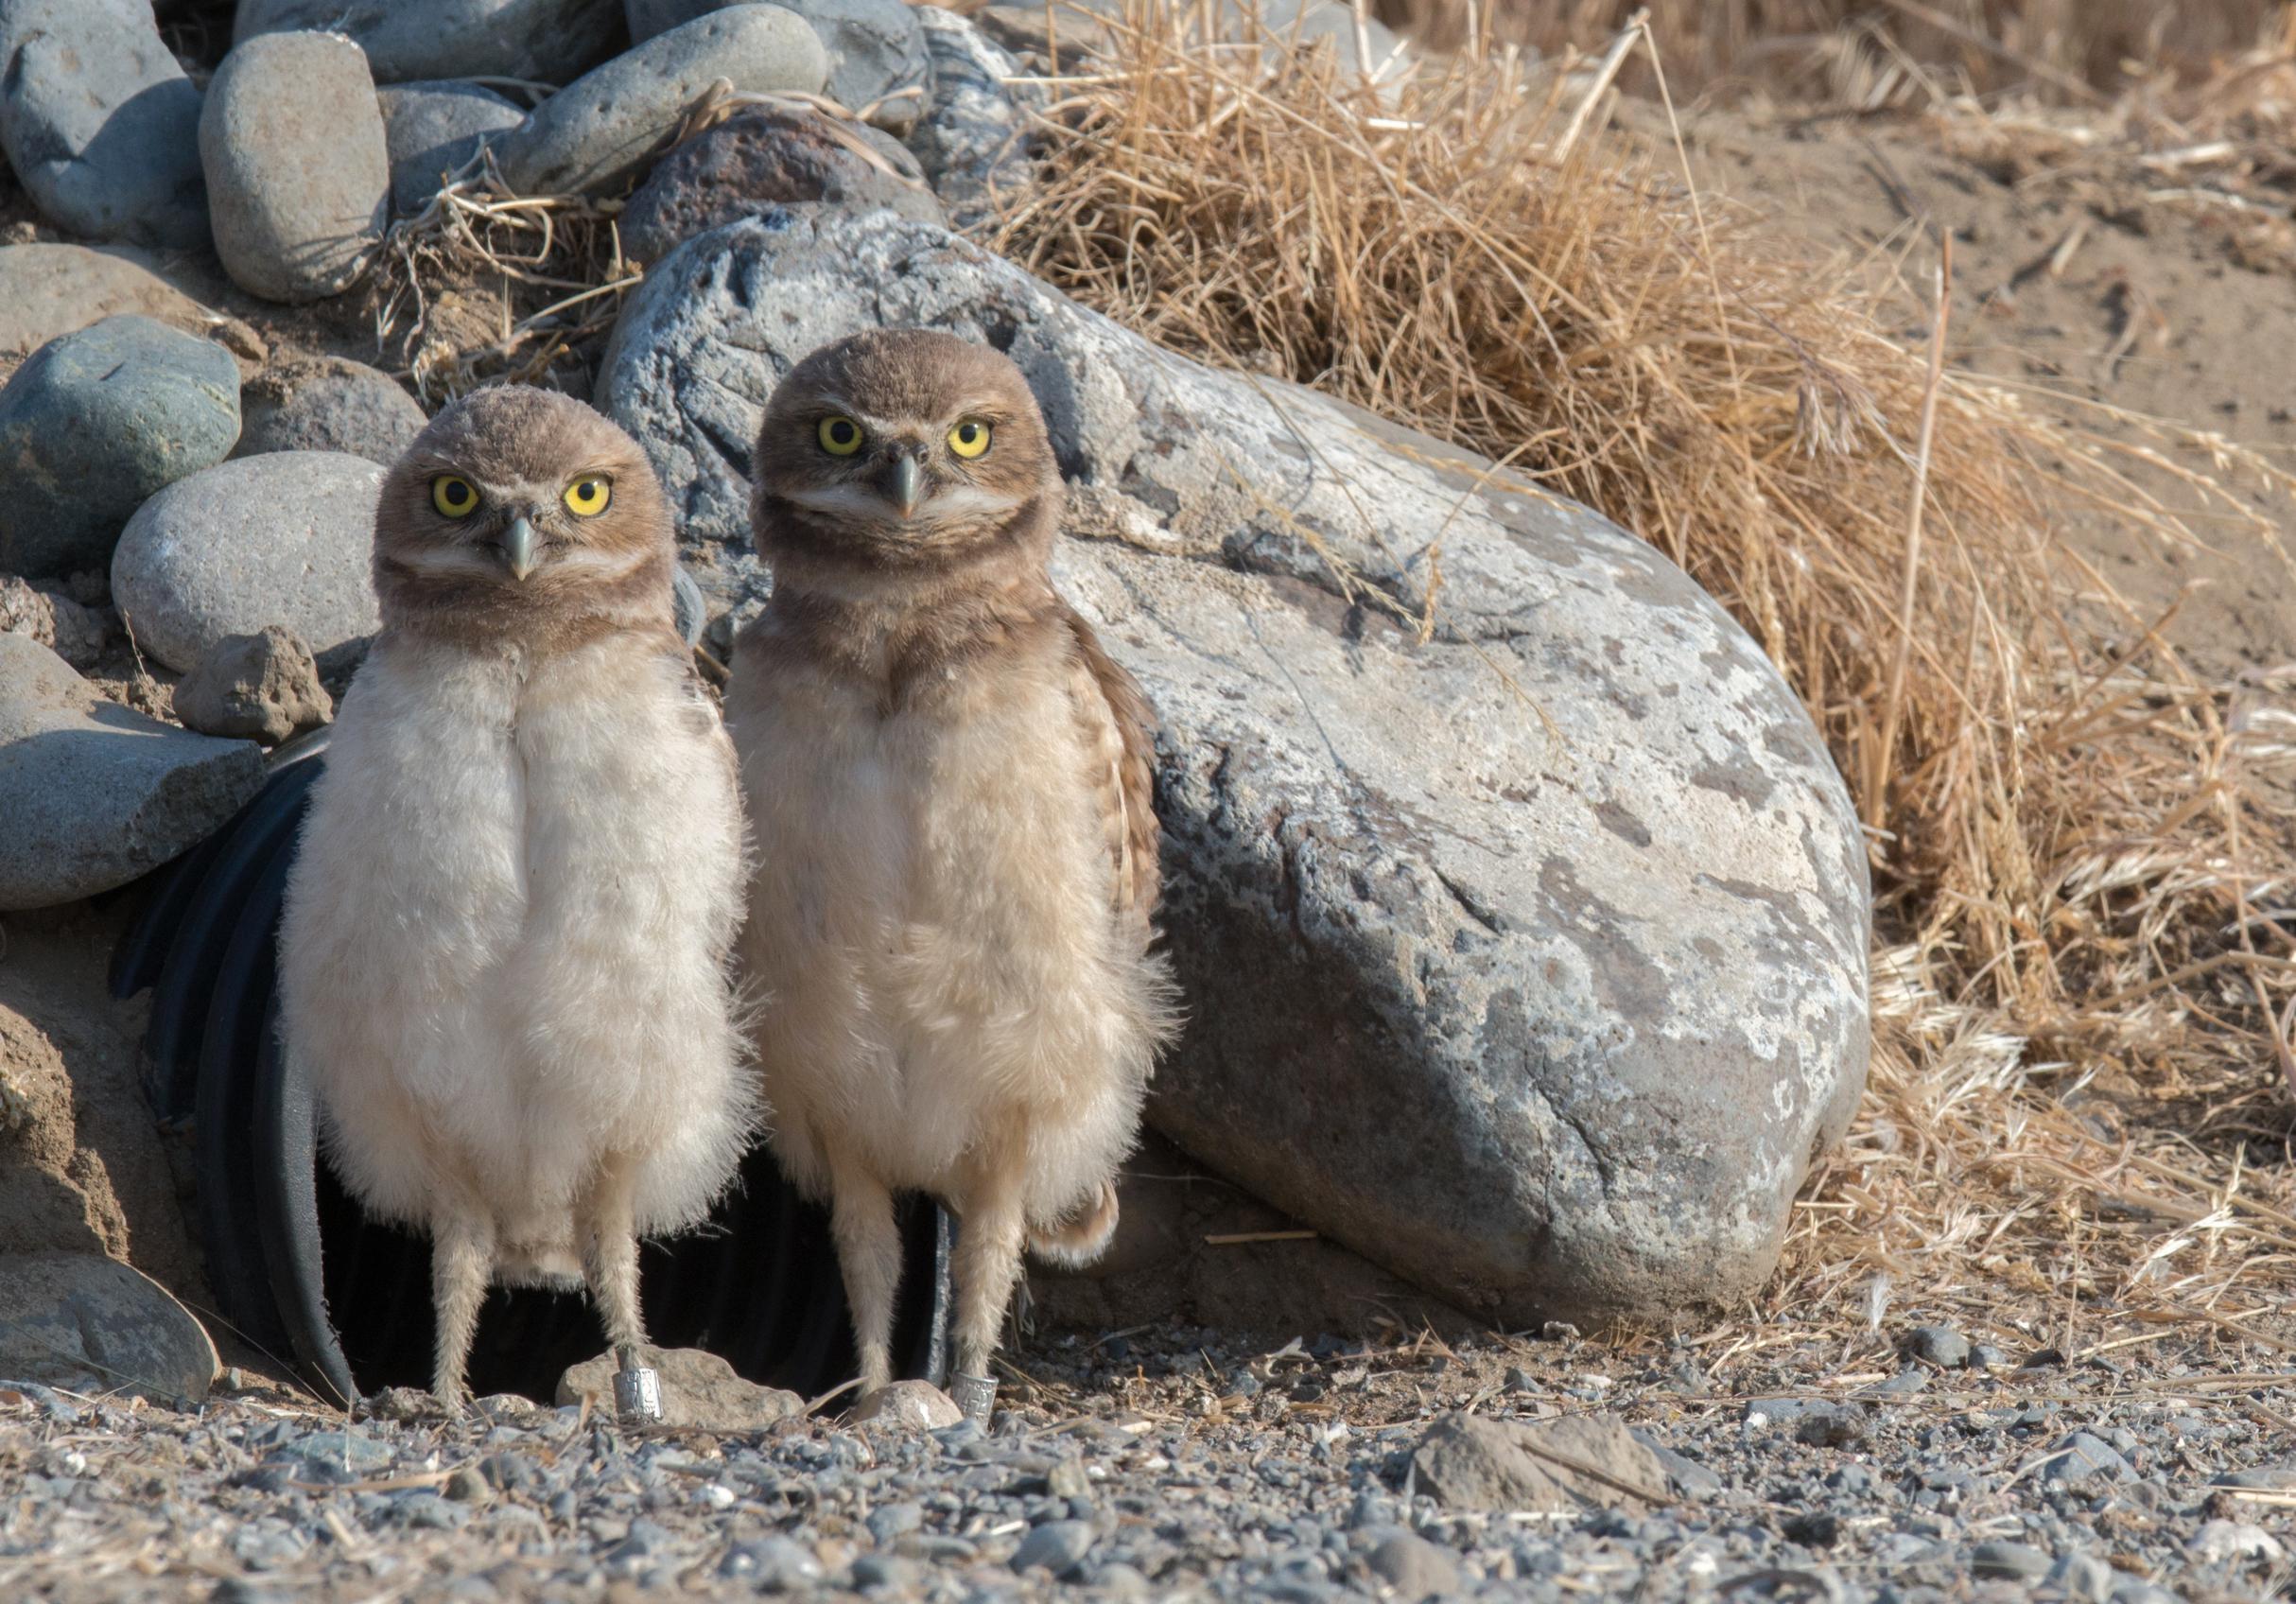 Burrowing owls have taken up residence in David Johnson's DIY burrows